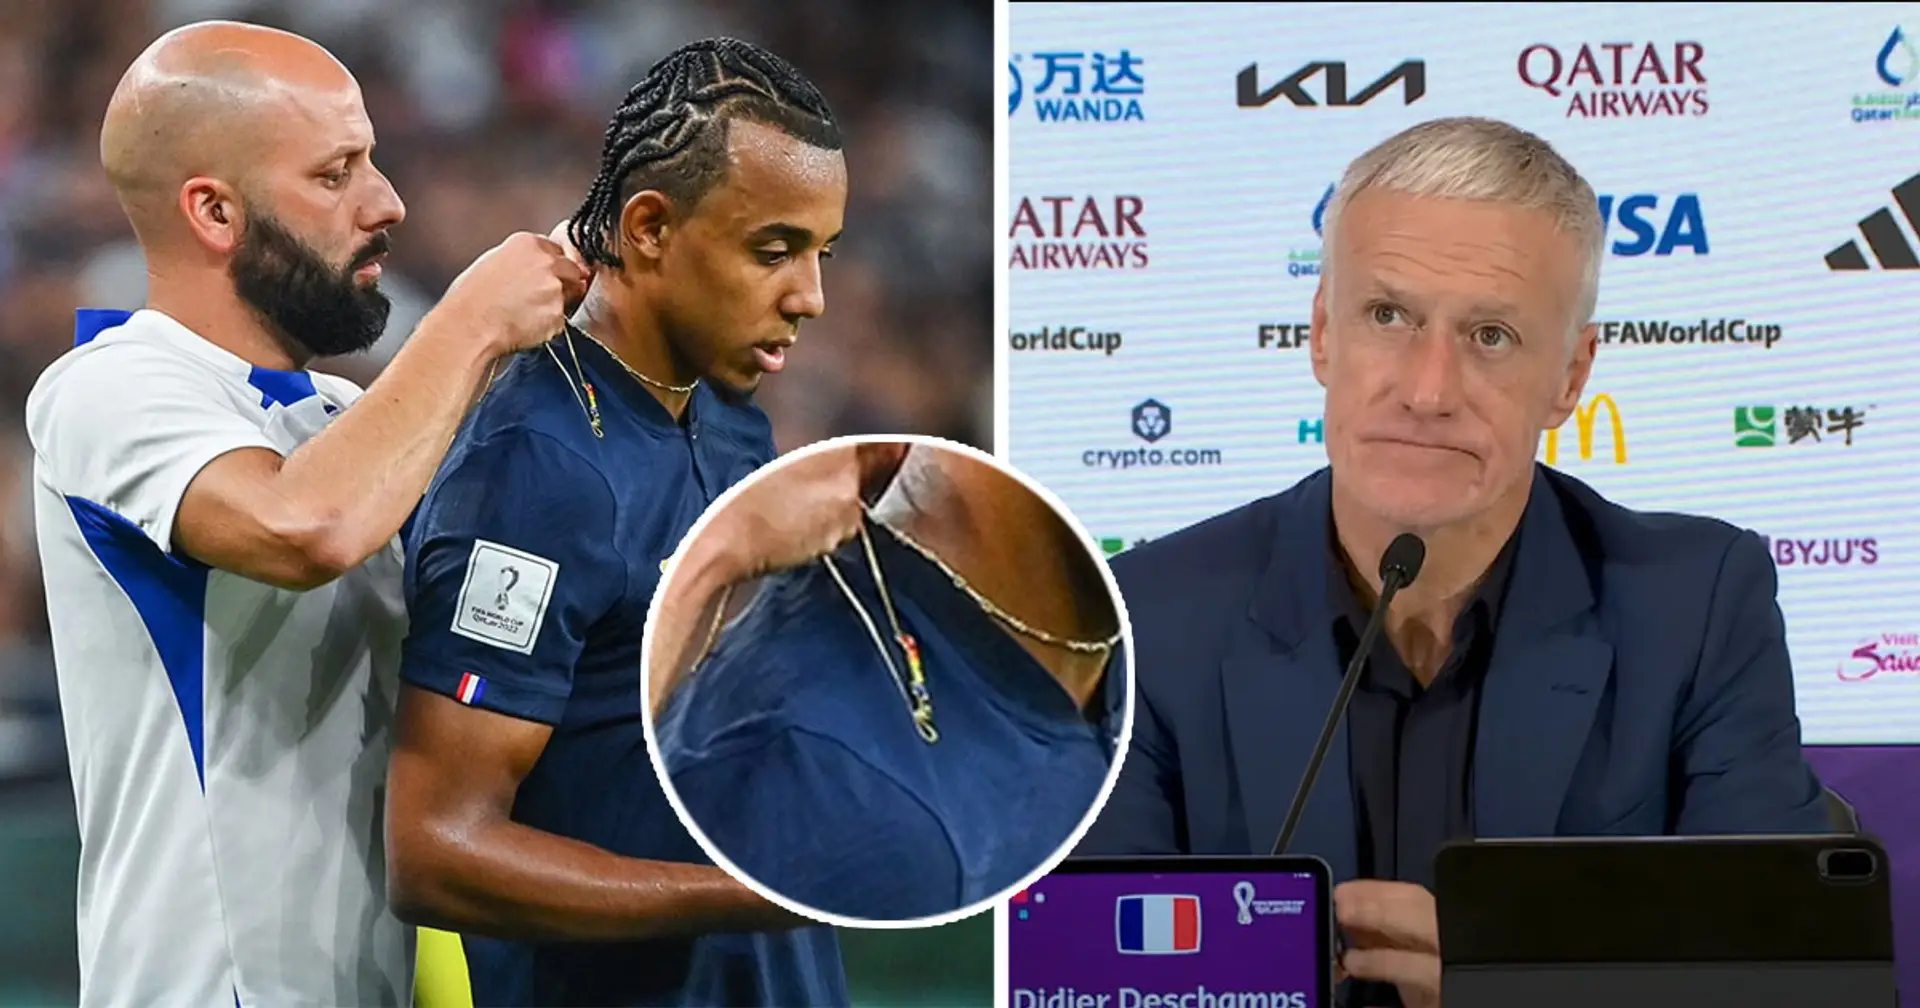 Koundé portait une chaîne aux couleurs de l'arc-en-ciel pendant le match de la Coupe du monde - Deschamps révèle s'il était au courant